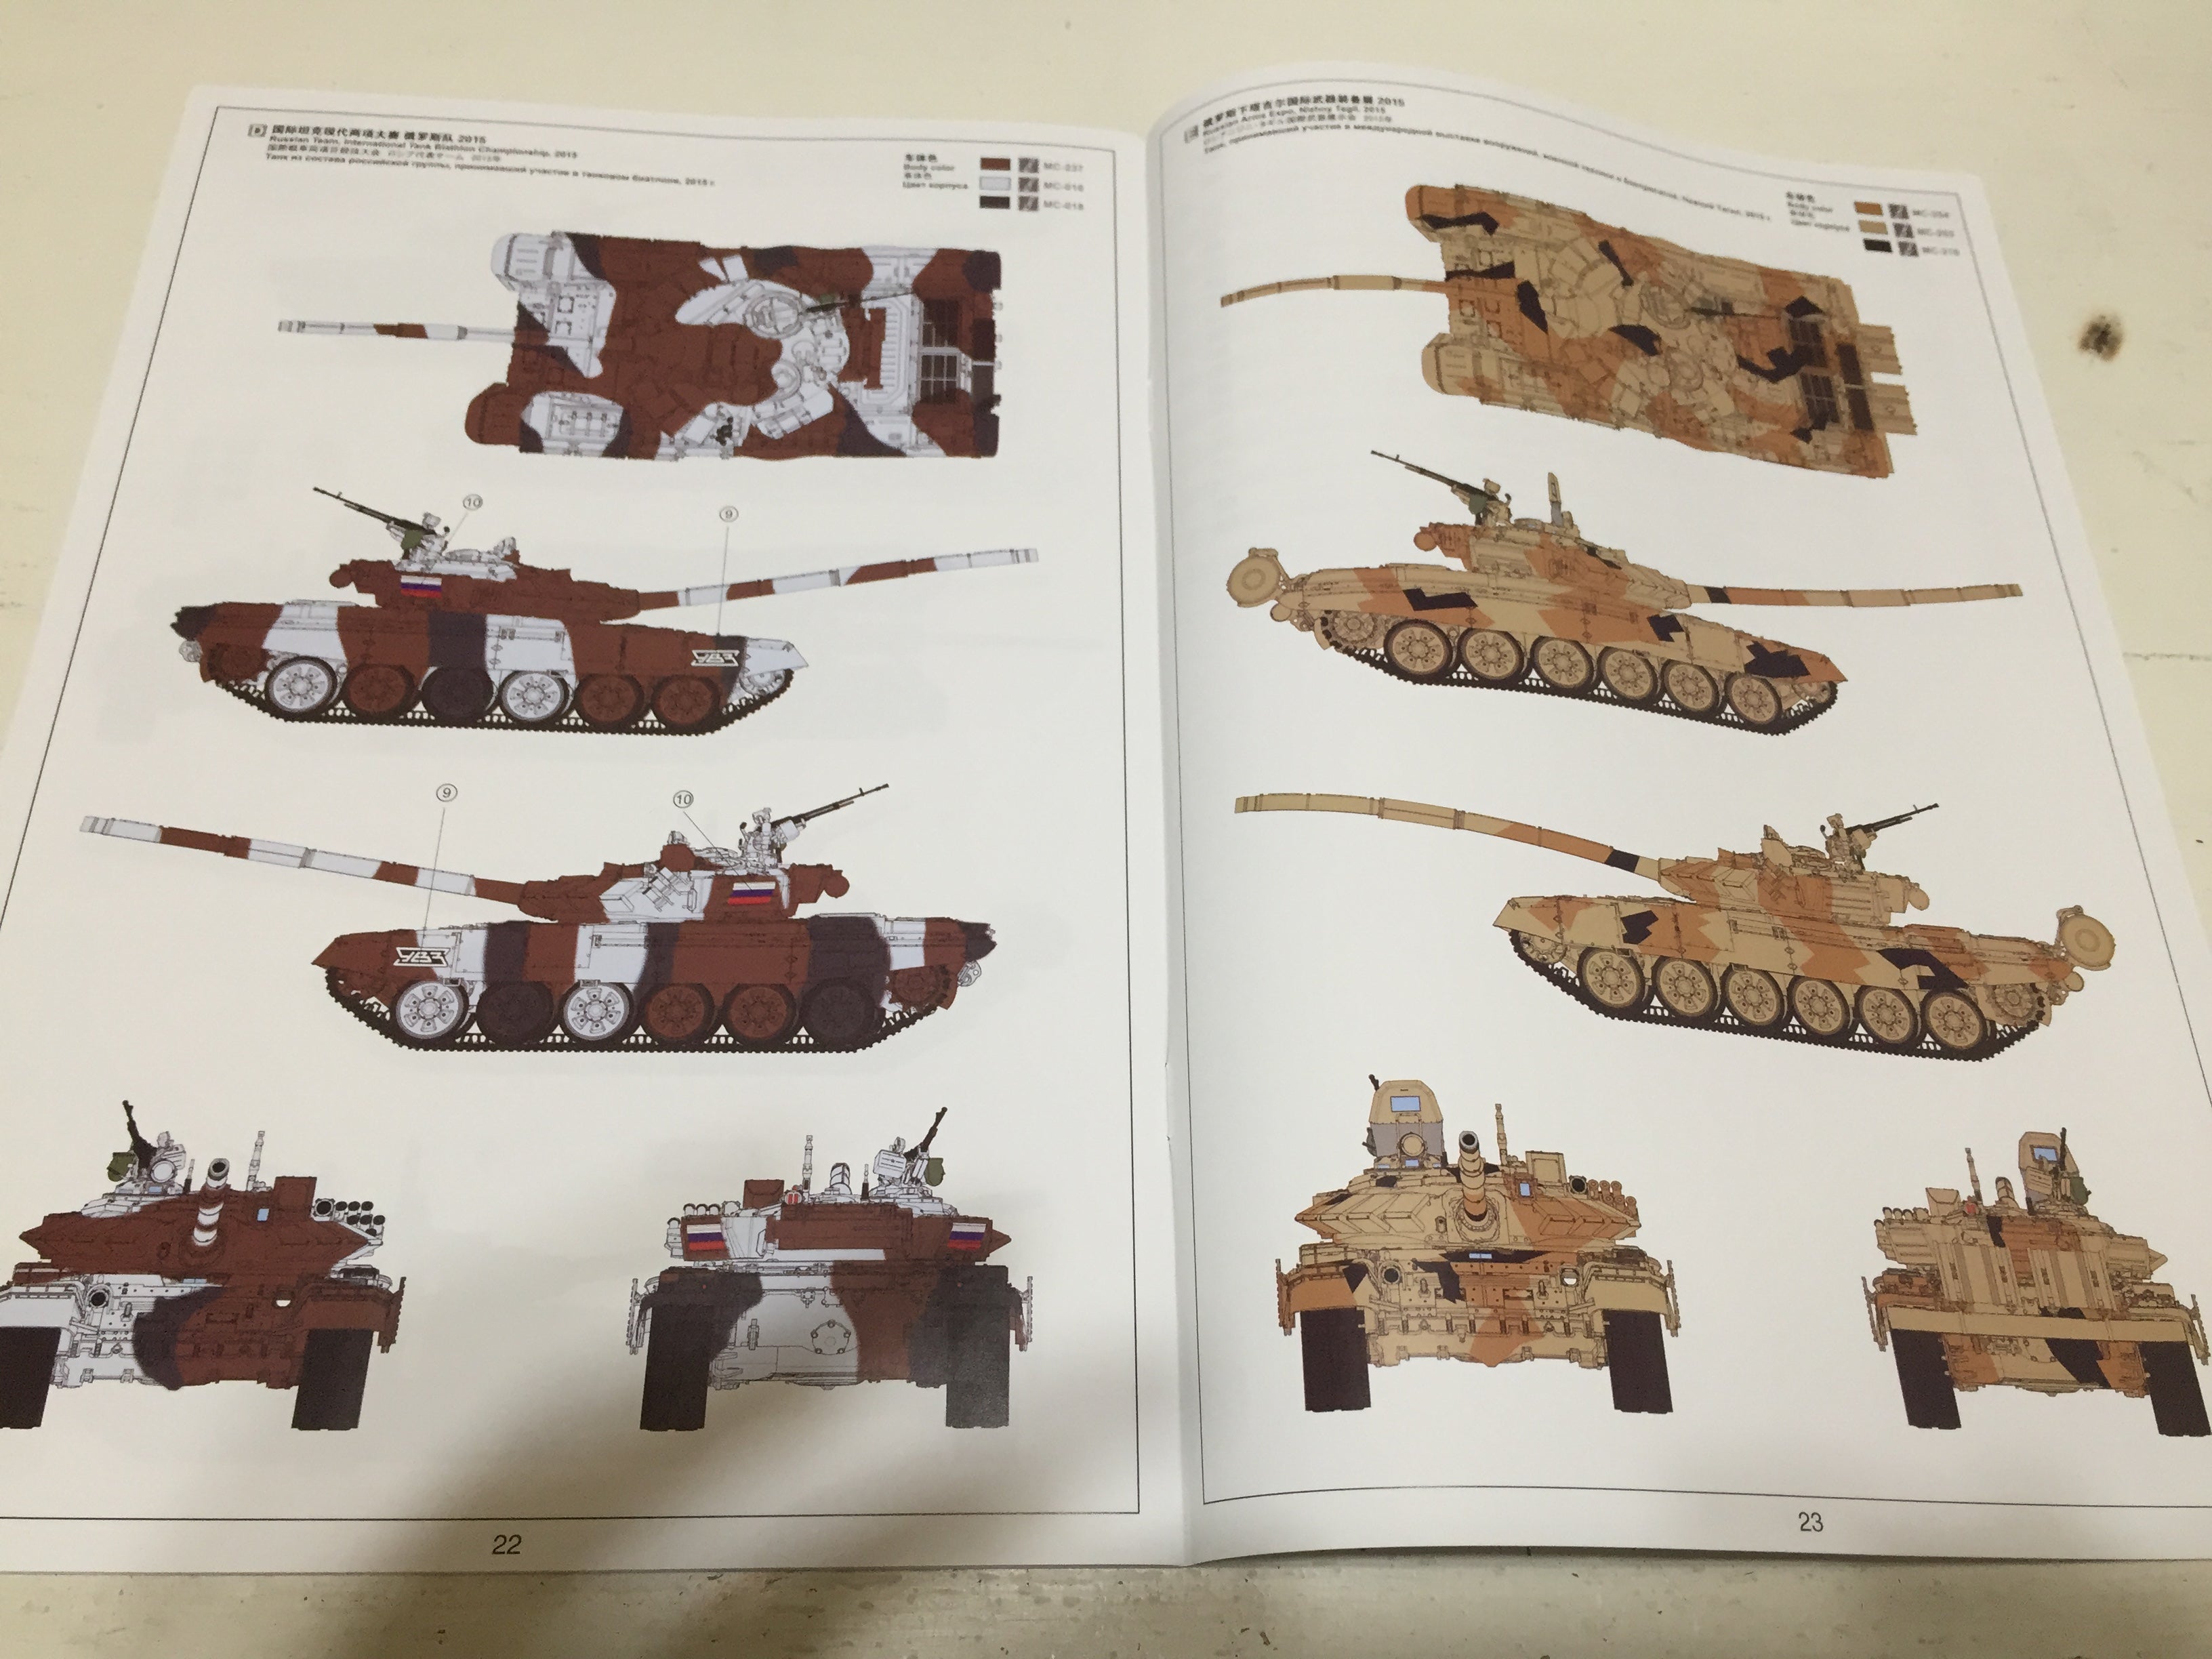 モンモデル 1/35 T-72B3 #01 キット紹介 | kingmanの模型製作記Ⓐ